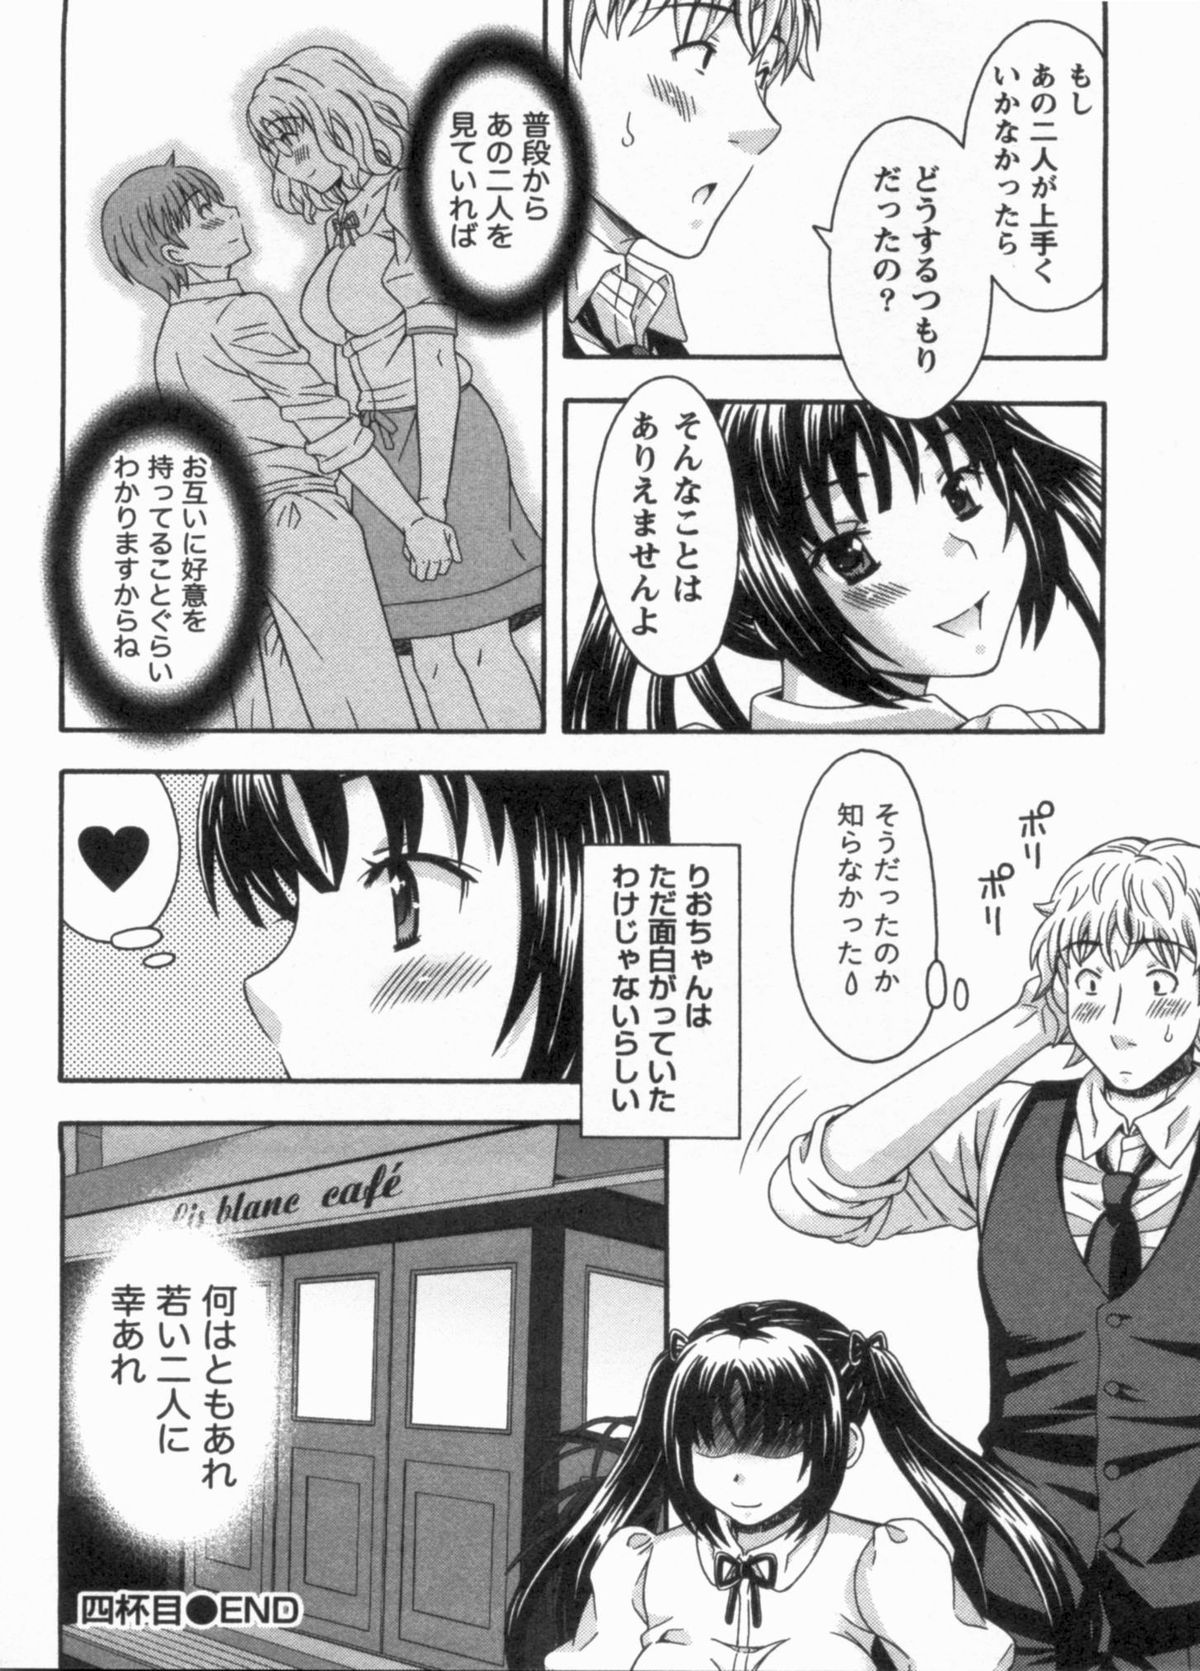 [まりぴょん] 恋カフェにようこそ!! 1 - Welcome to Love&cafe!! 1